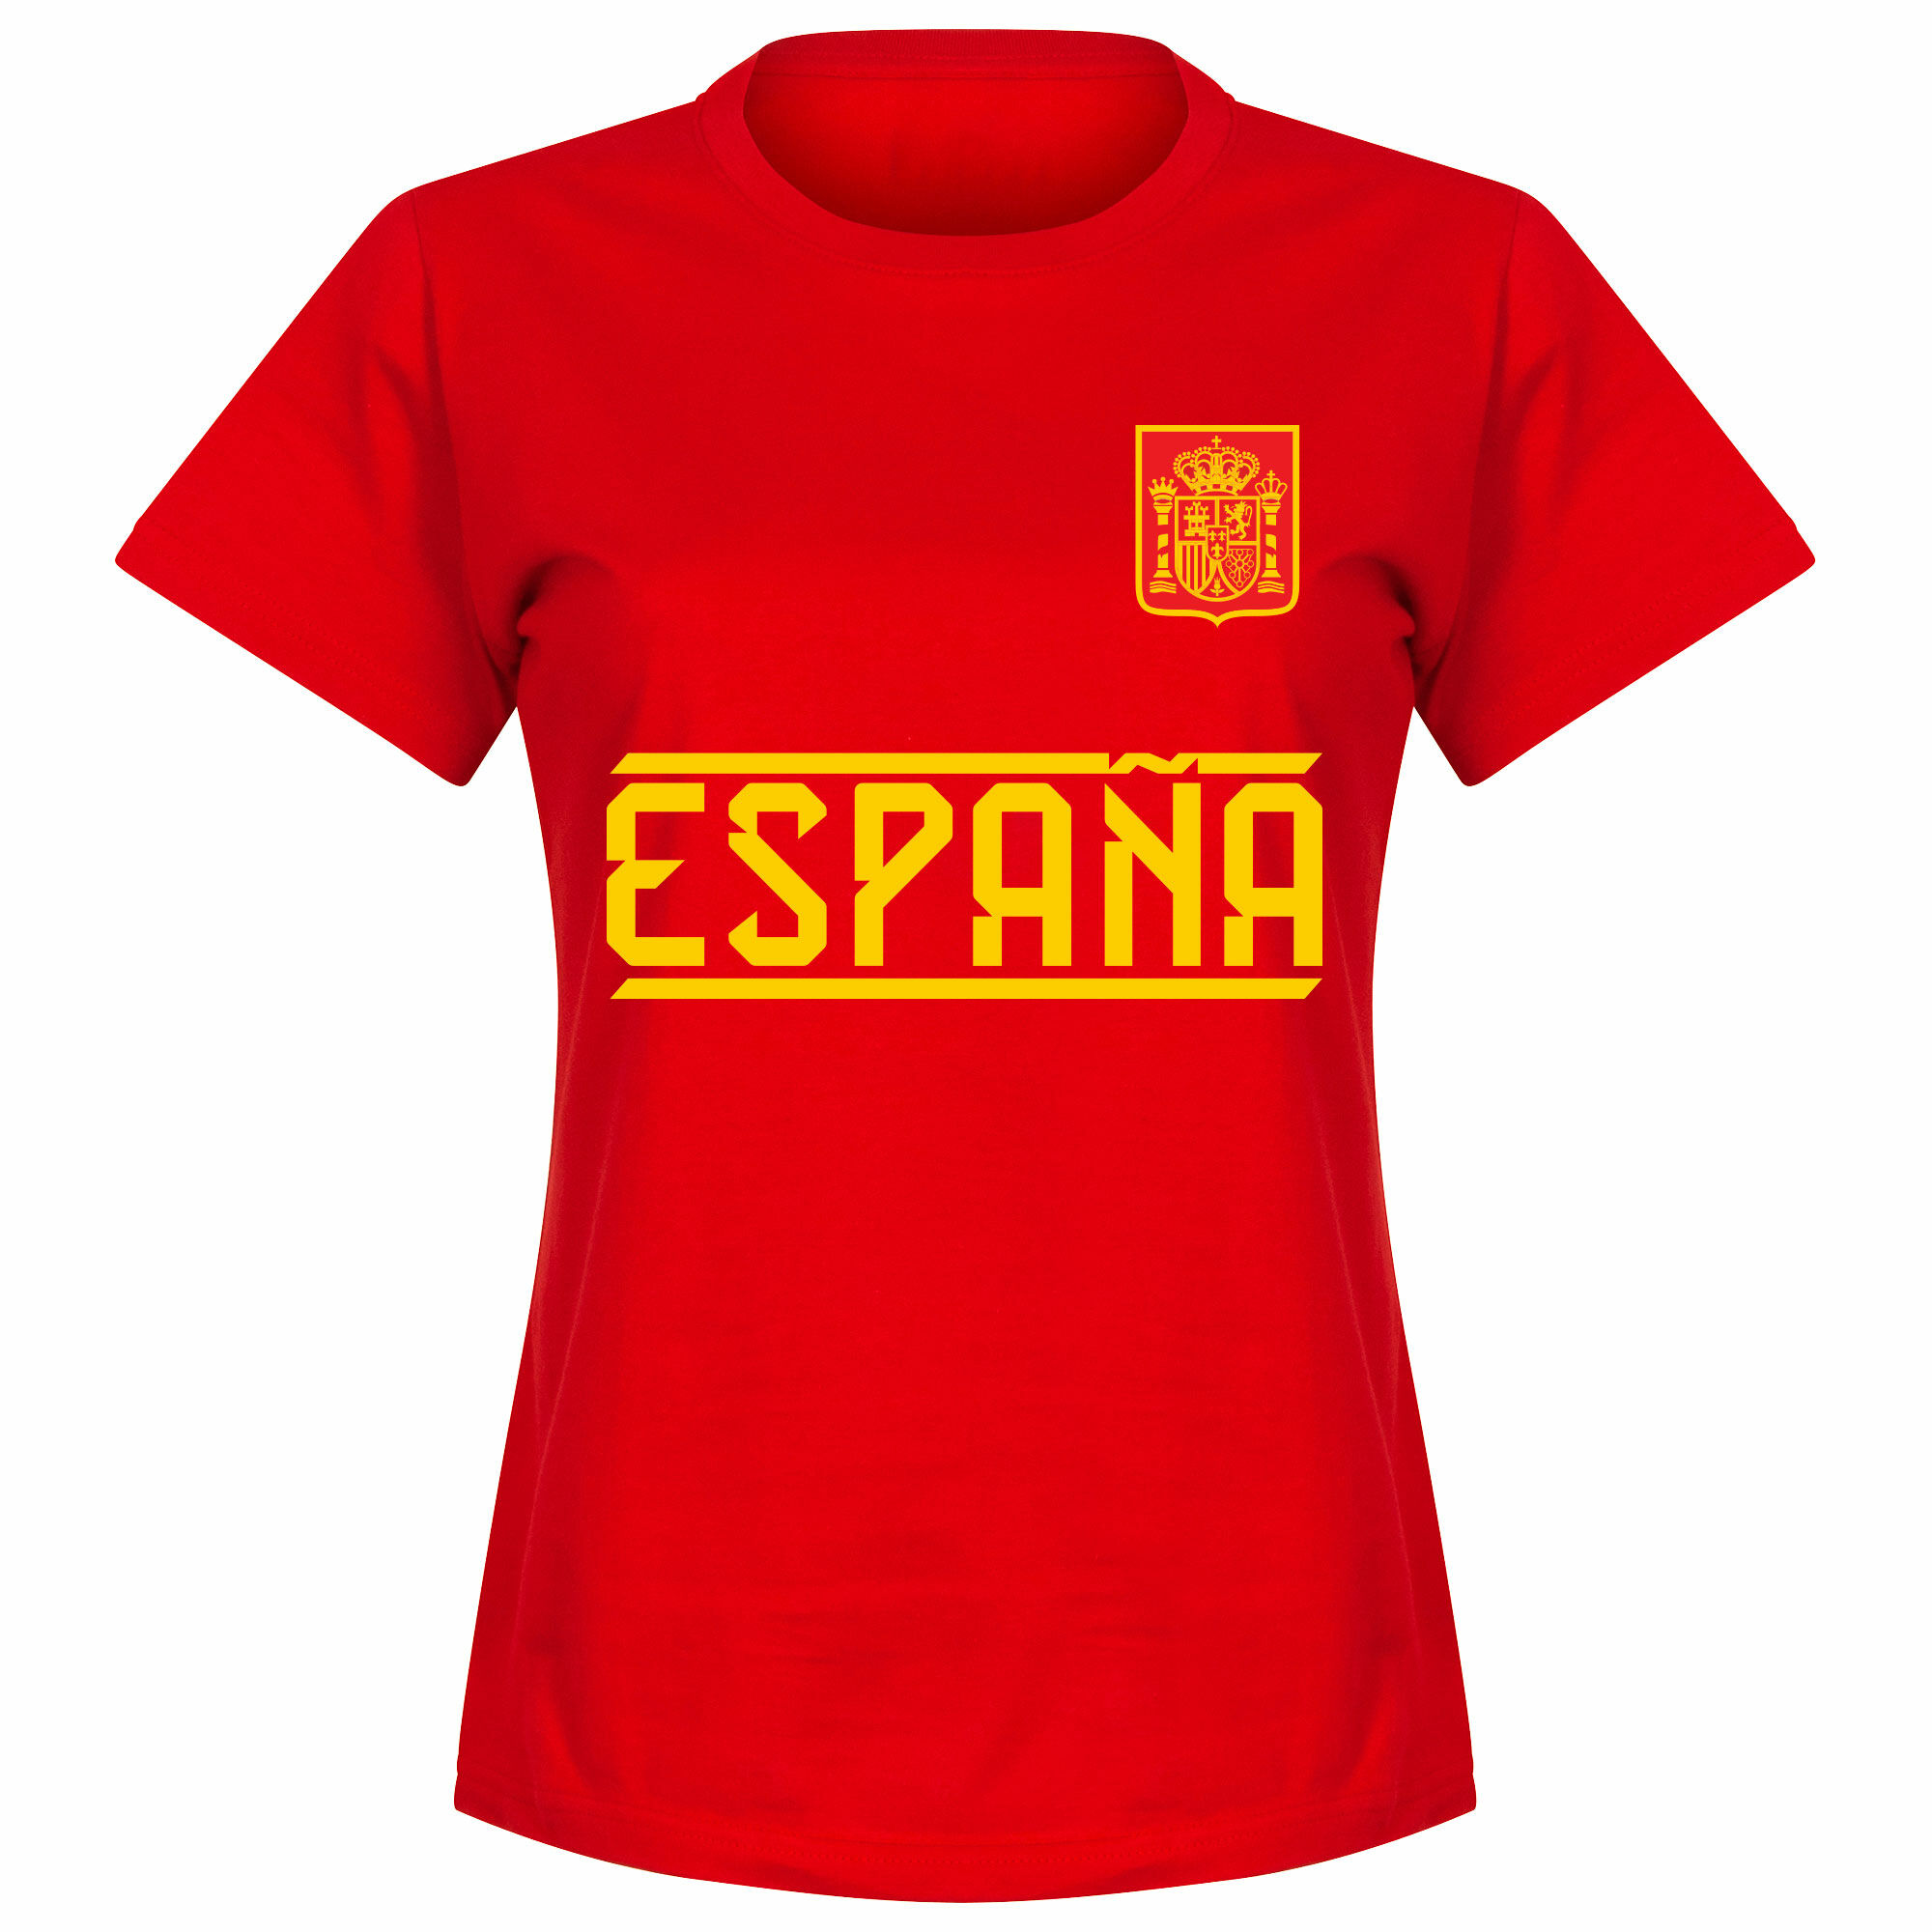 Španělsko - Tričko dámské - červené